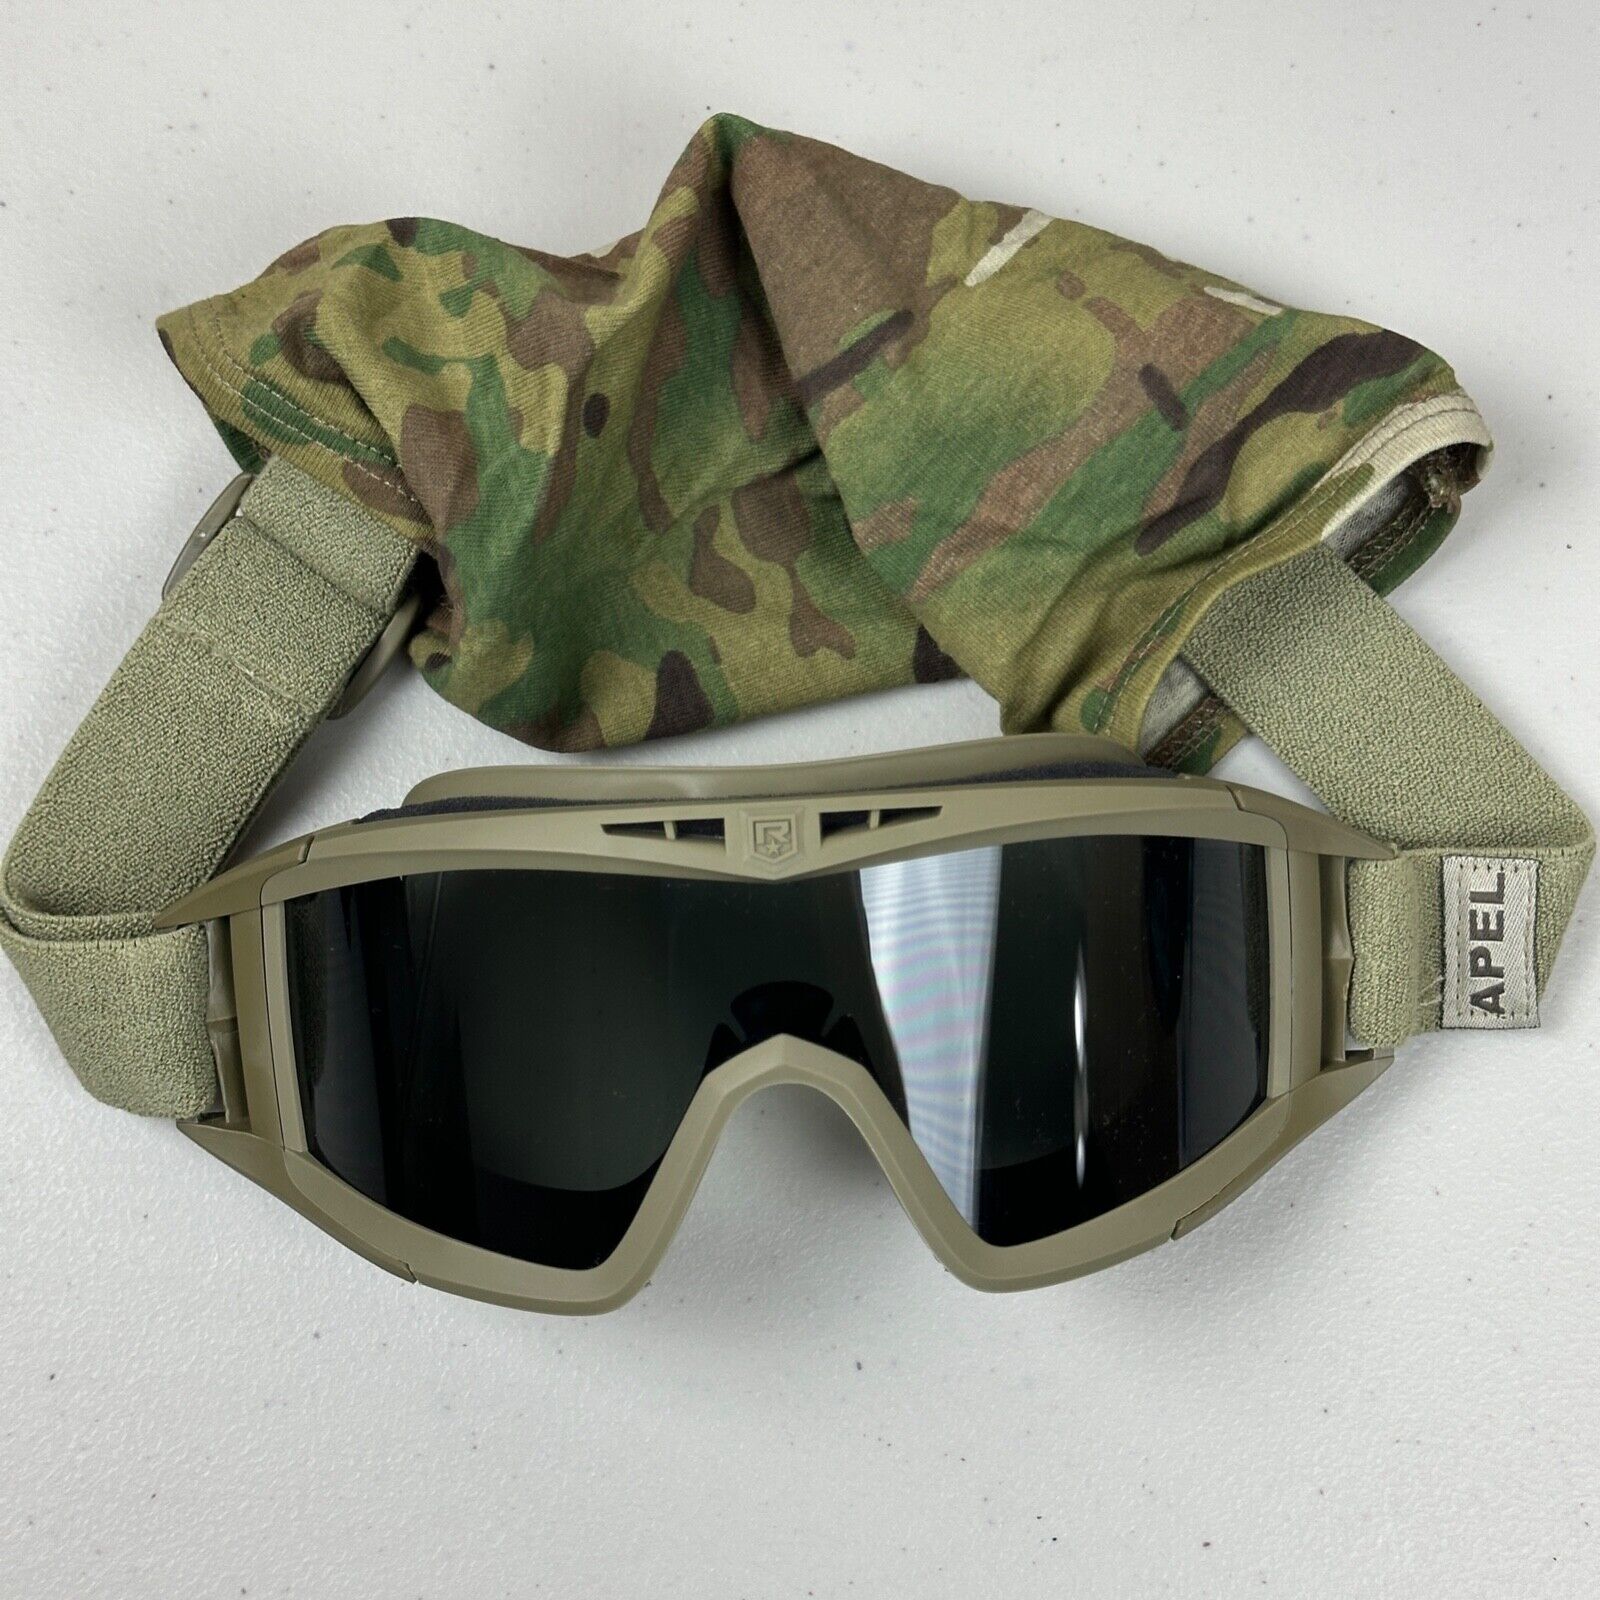 Revision Desert Locust US Military Goggles APEL dark Lens Camo With Case